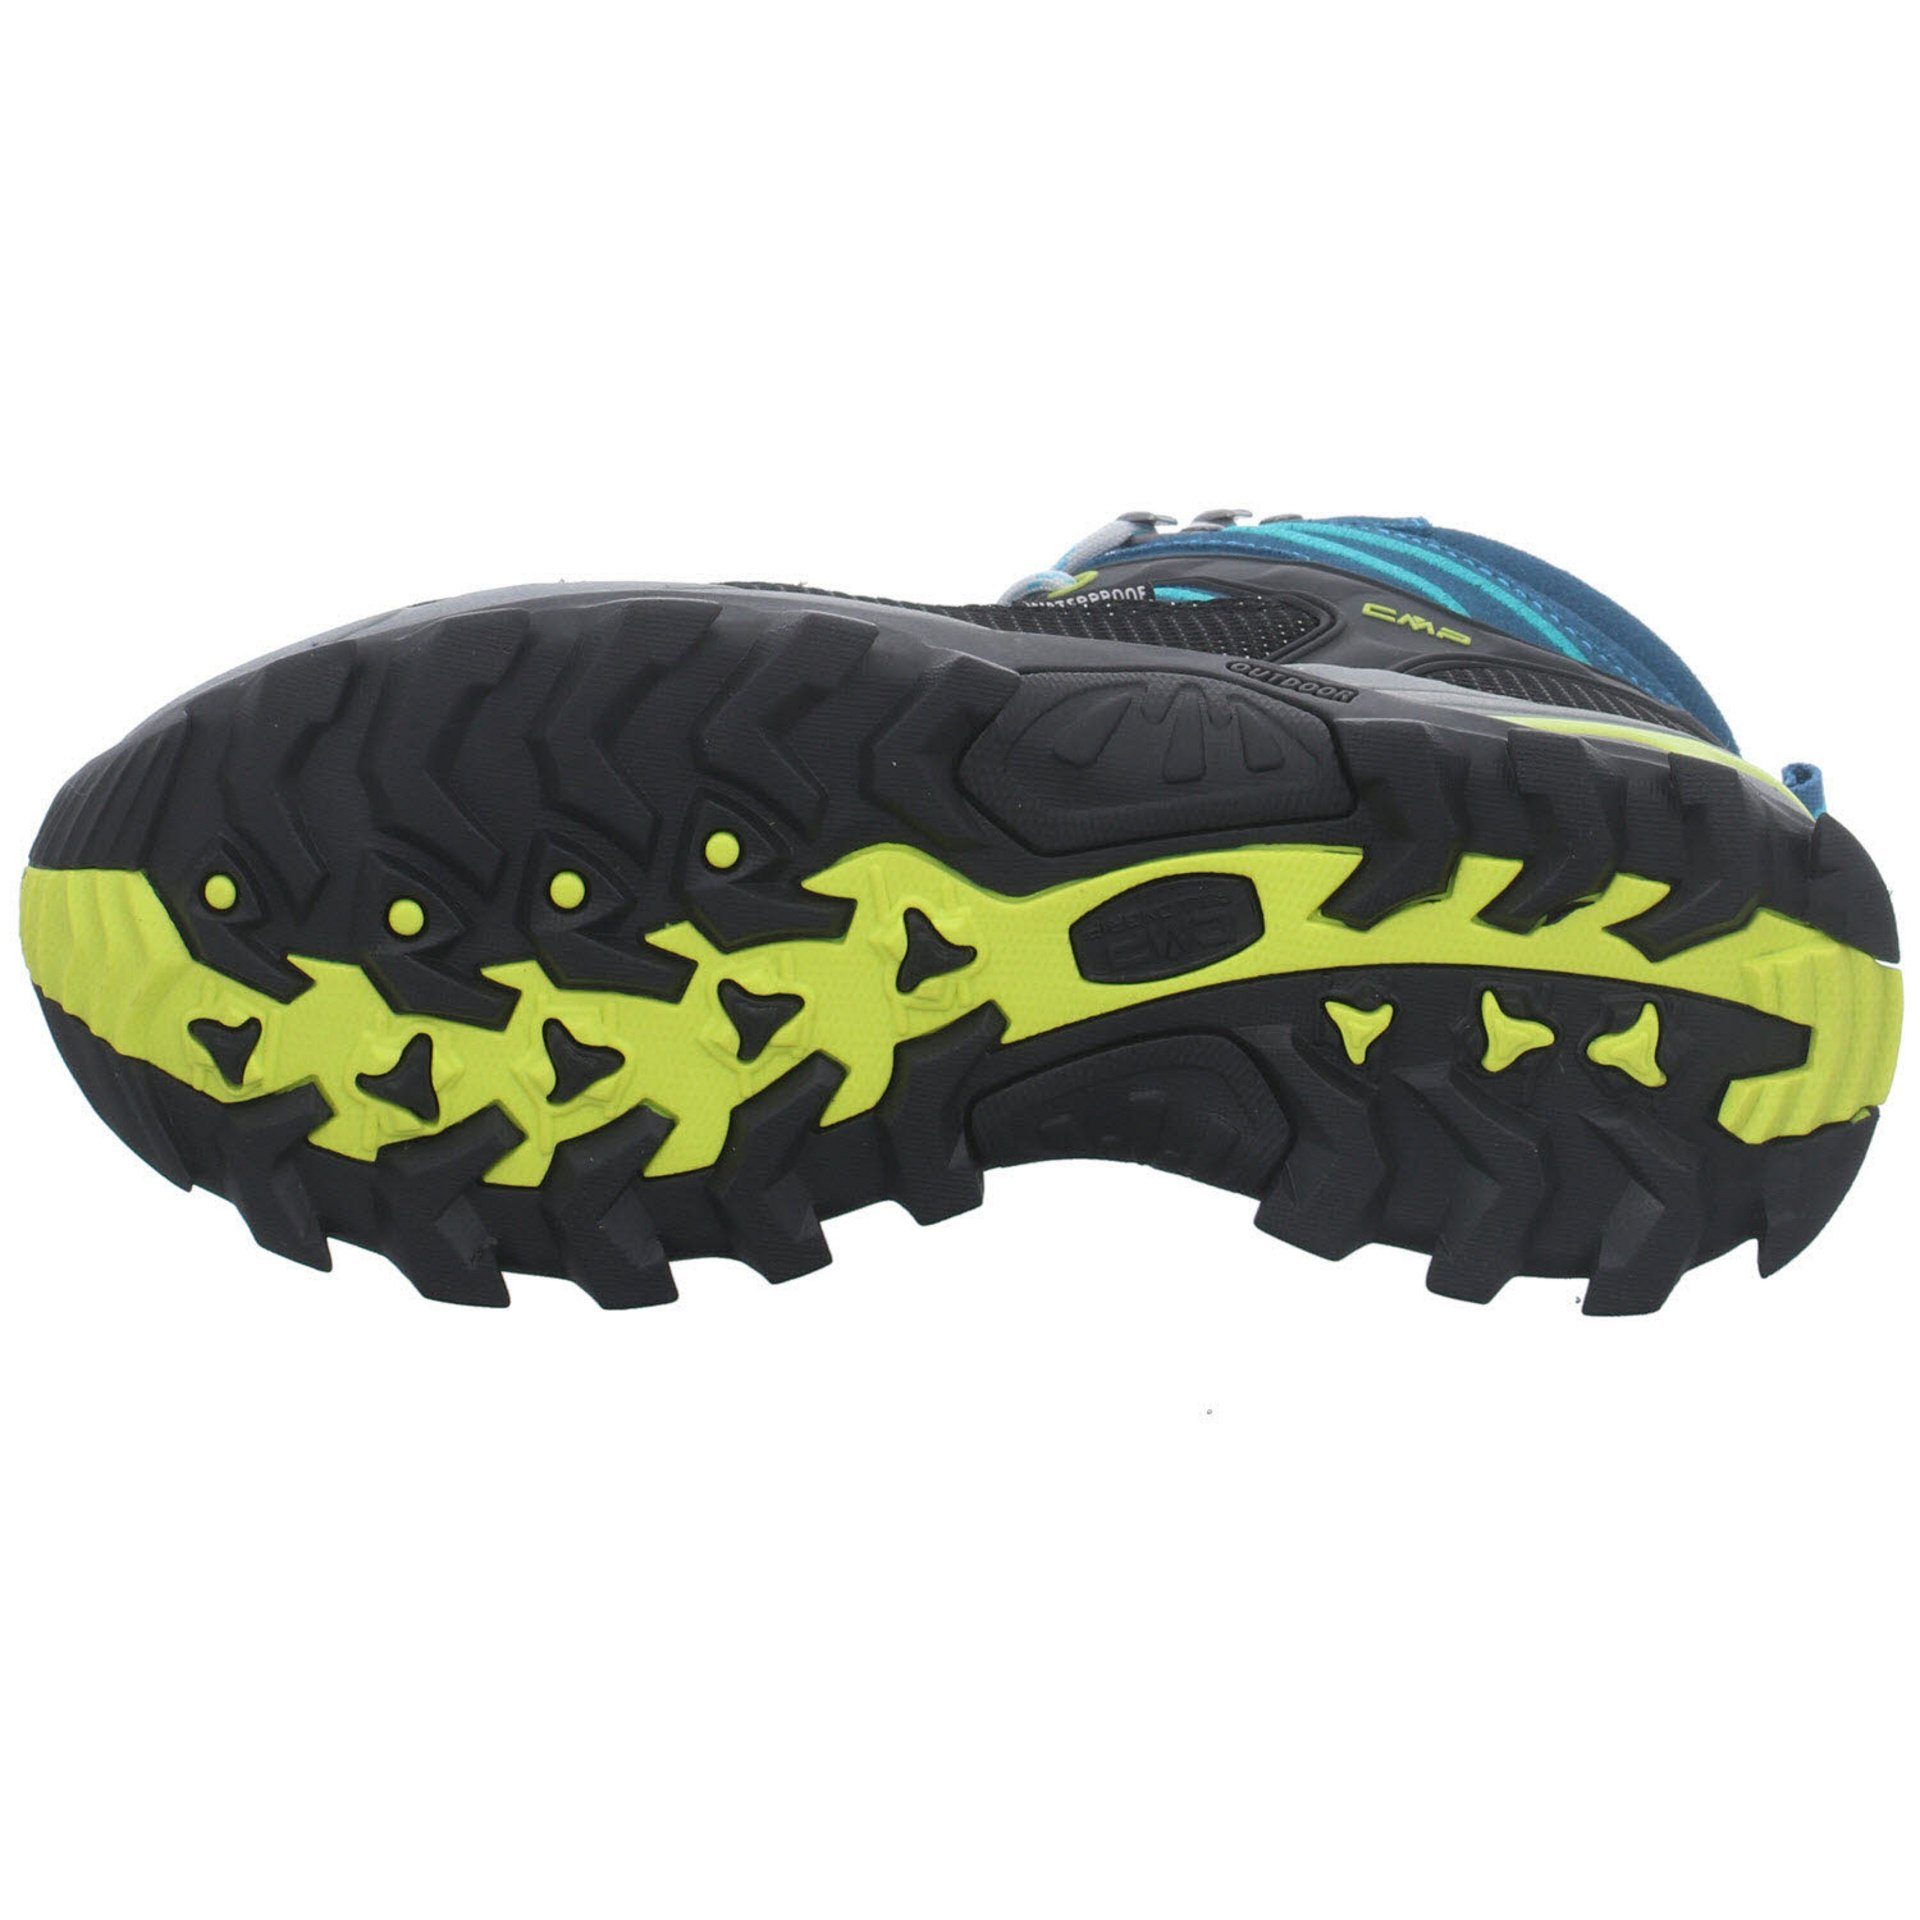 Schuhe Damen Leder-/Textilkombination DEEP Outdoorschuh Outdoorschuh Outdoor LAKE-BALTIC CMP Rigel Mid